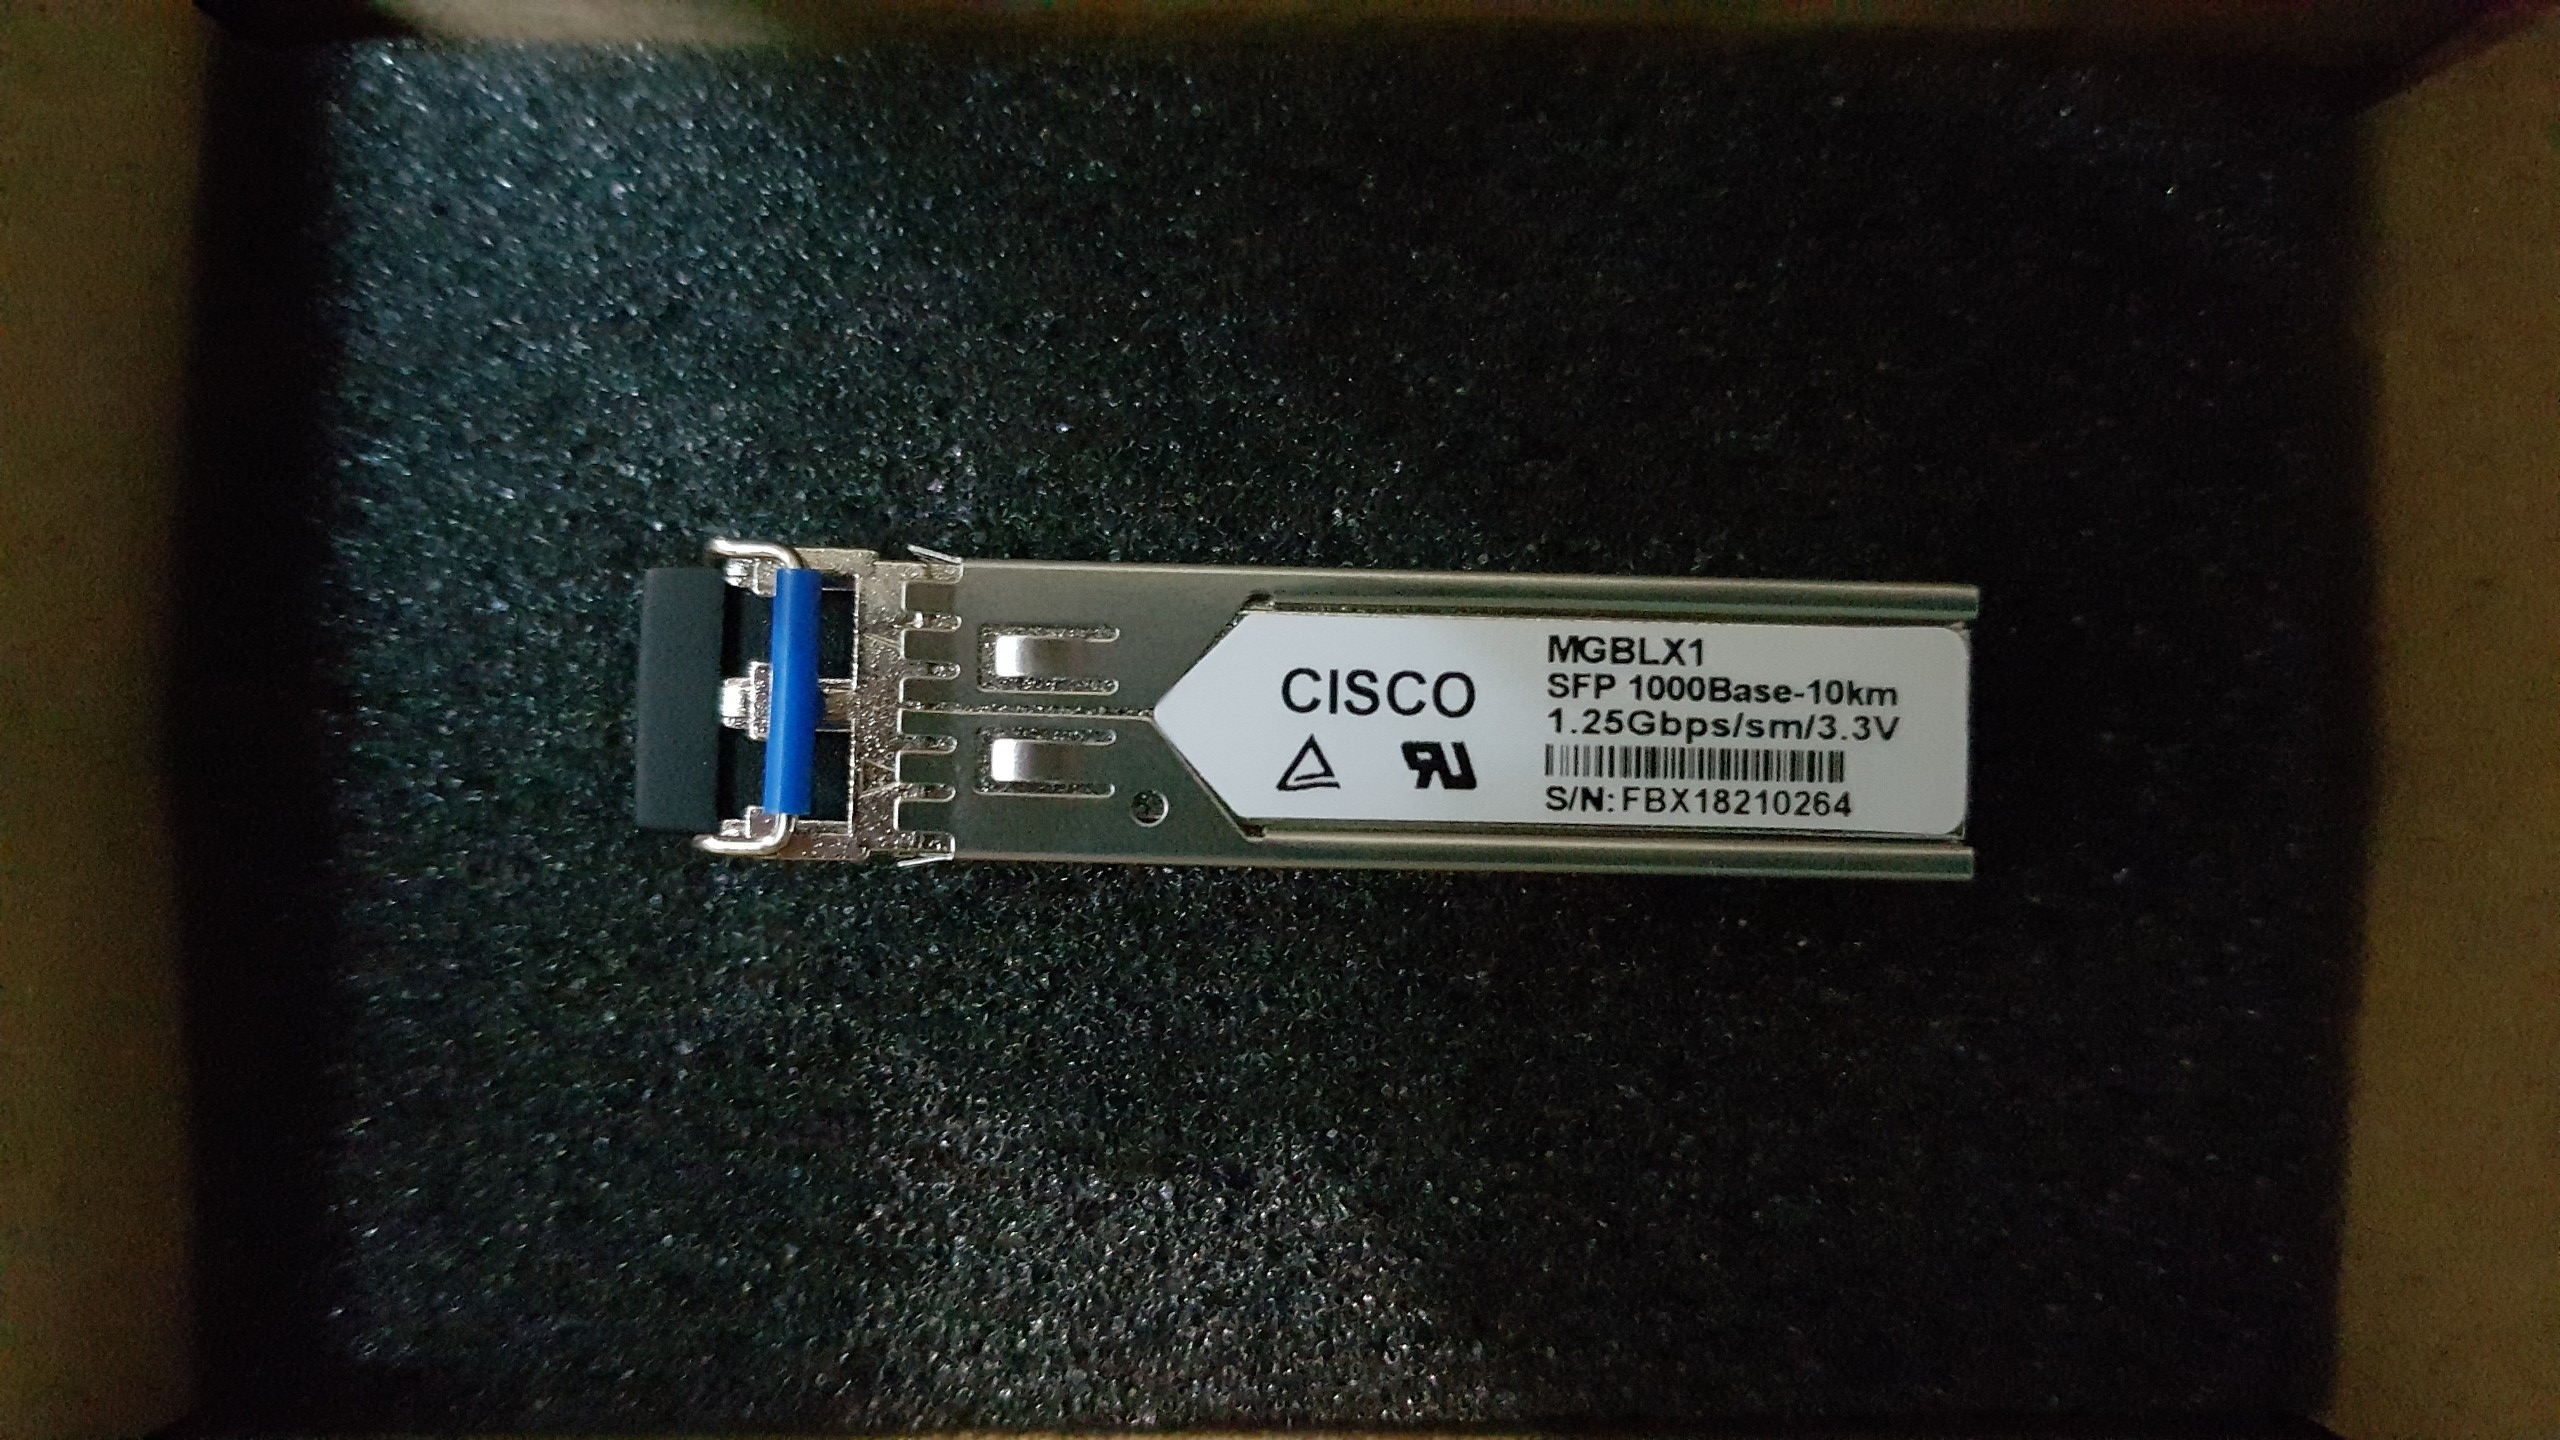 Module quang SFP Cisco MGBLX1 GE LX 1310nm 10KM SMF hàng nhập khẩu